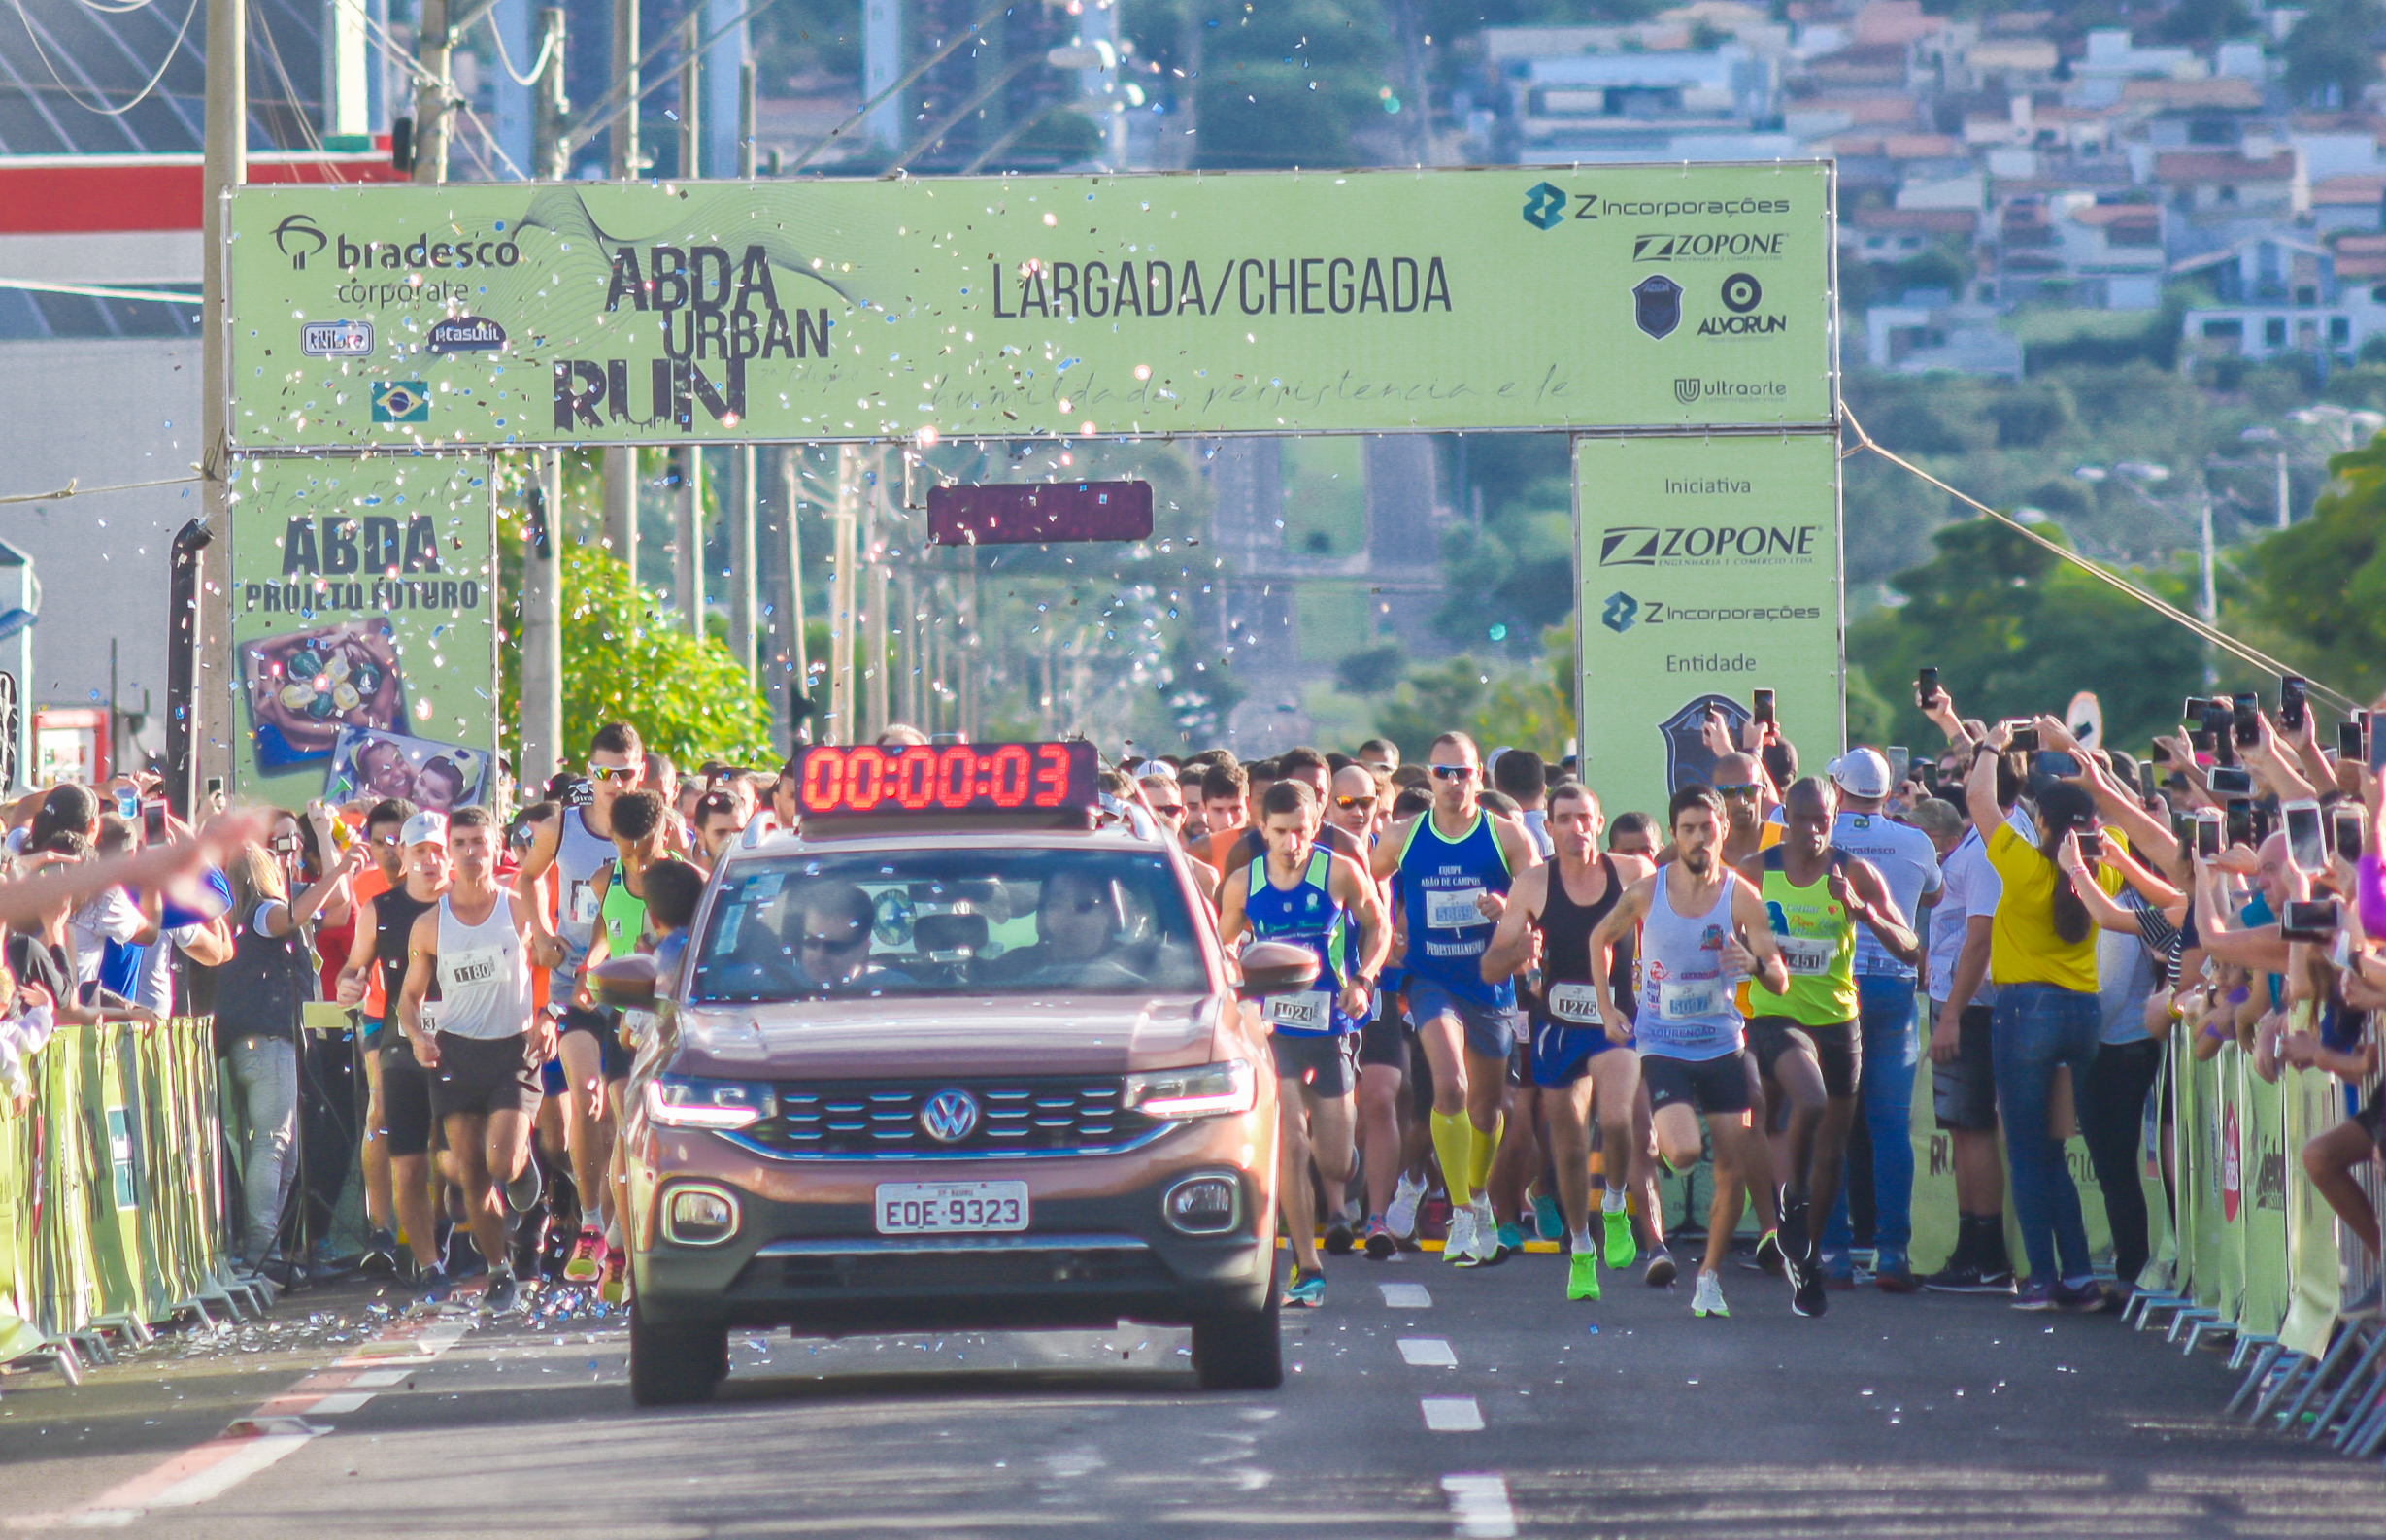 ABDA Urban Run, maior corrida de rua do interior paulista, agita Bauru neste domingo